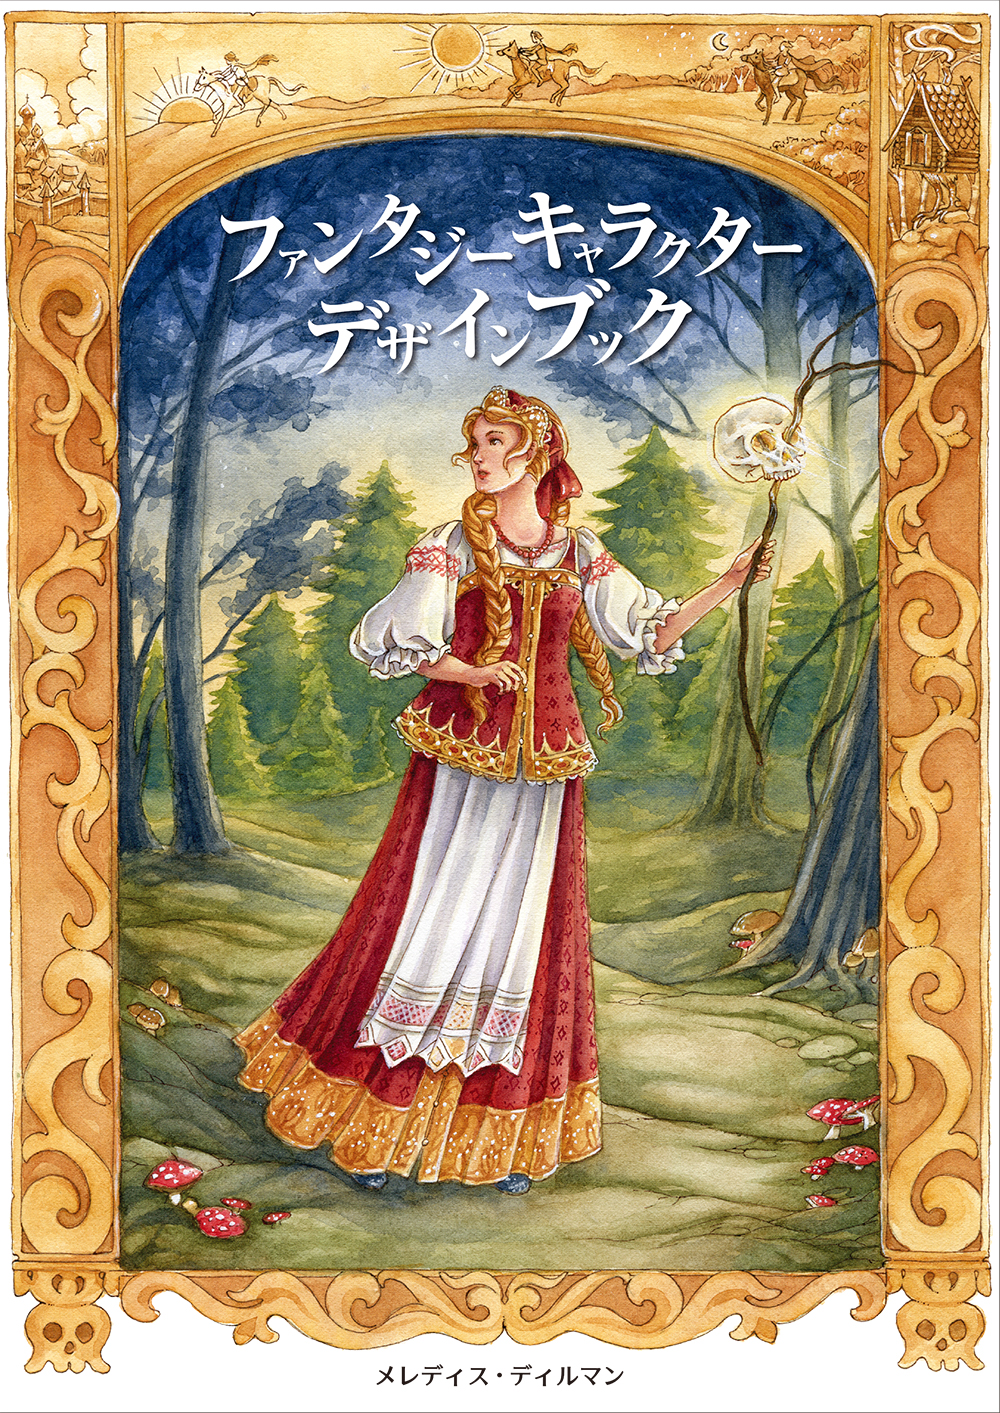 ファンタジーキャラクターデザインブック -自然や時代をヒントに、魅力的な妖精・人魚・王女などを描く-の商品画像